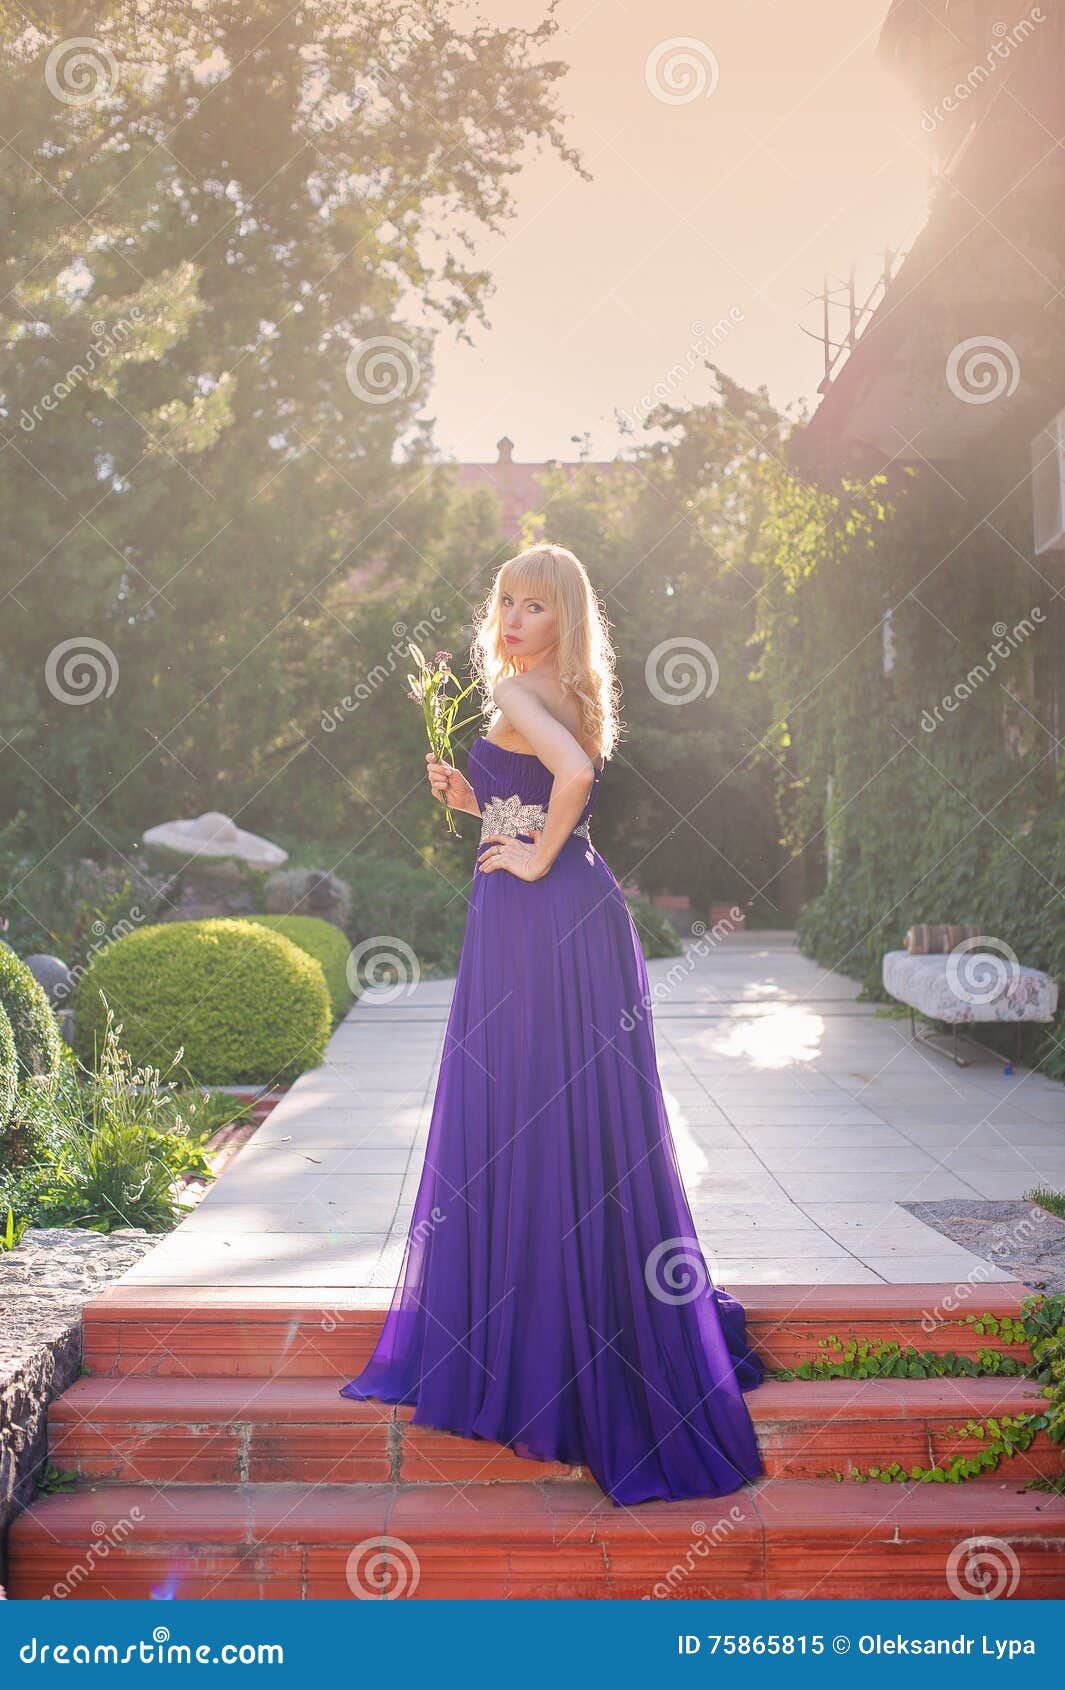 Woman Wears Long Purple Dress. Stock Image - Image of bride, flowers ...